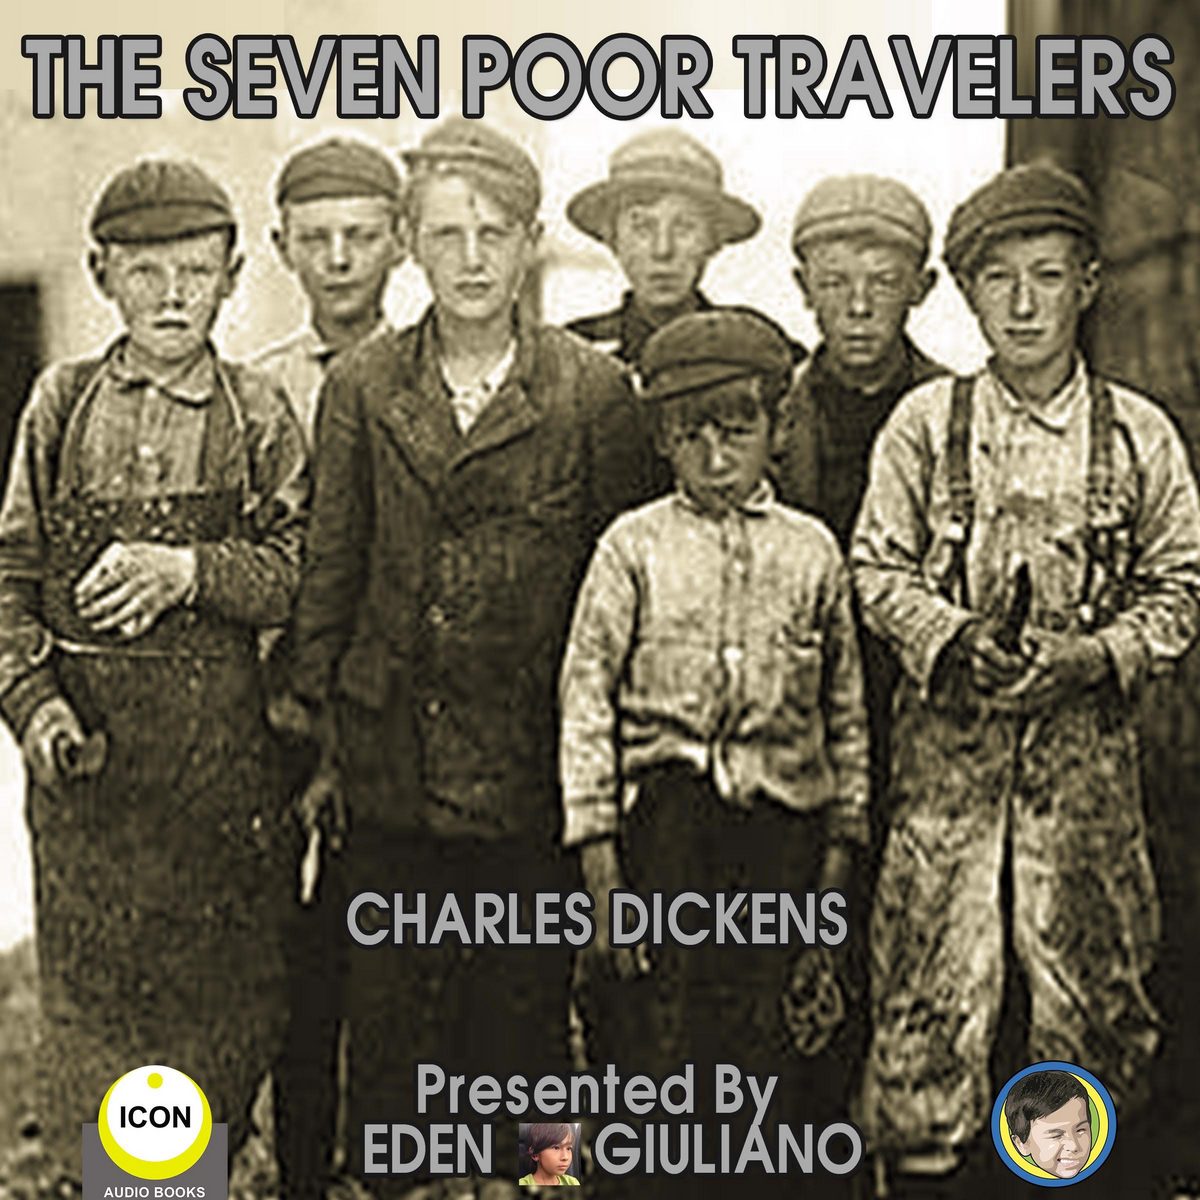 The Seven Poor Travelers